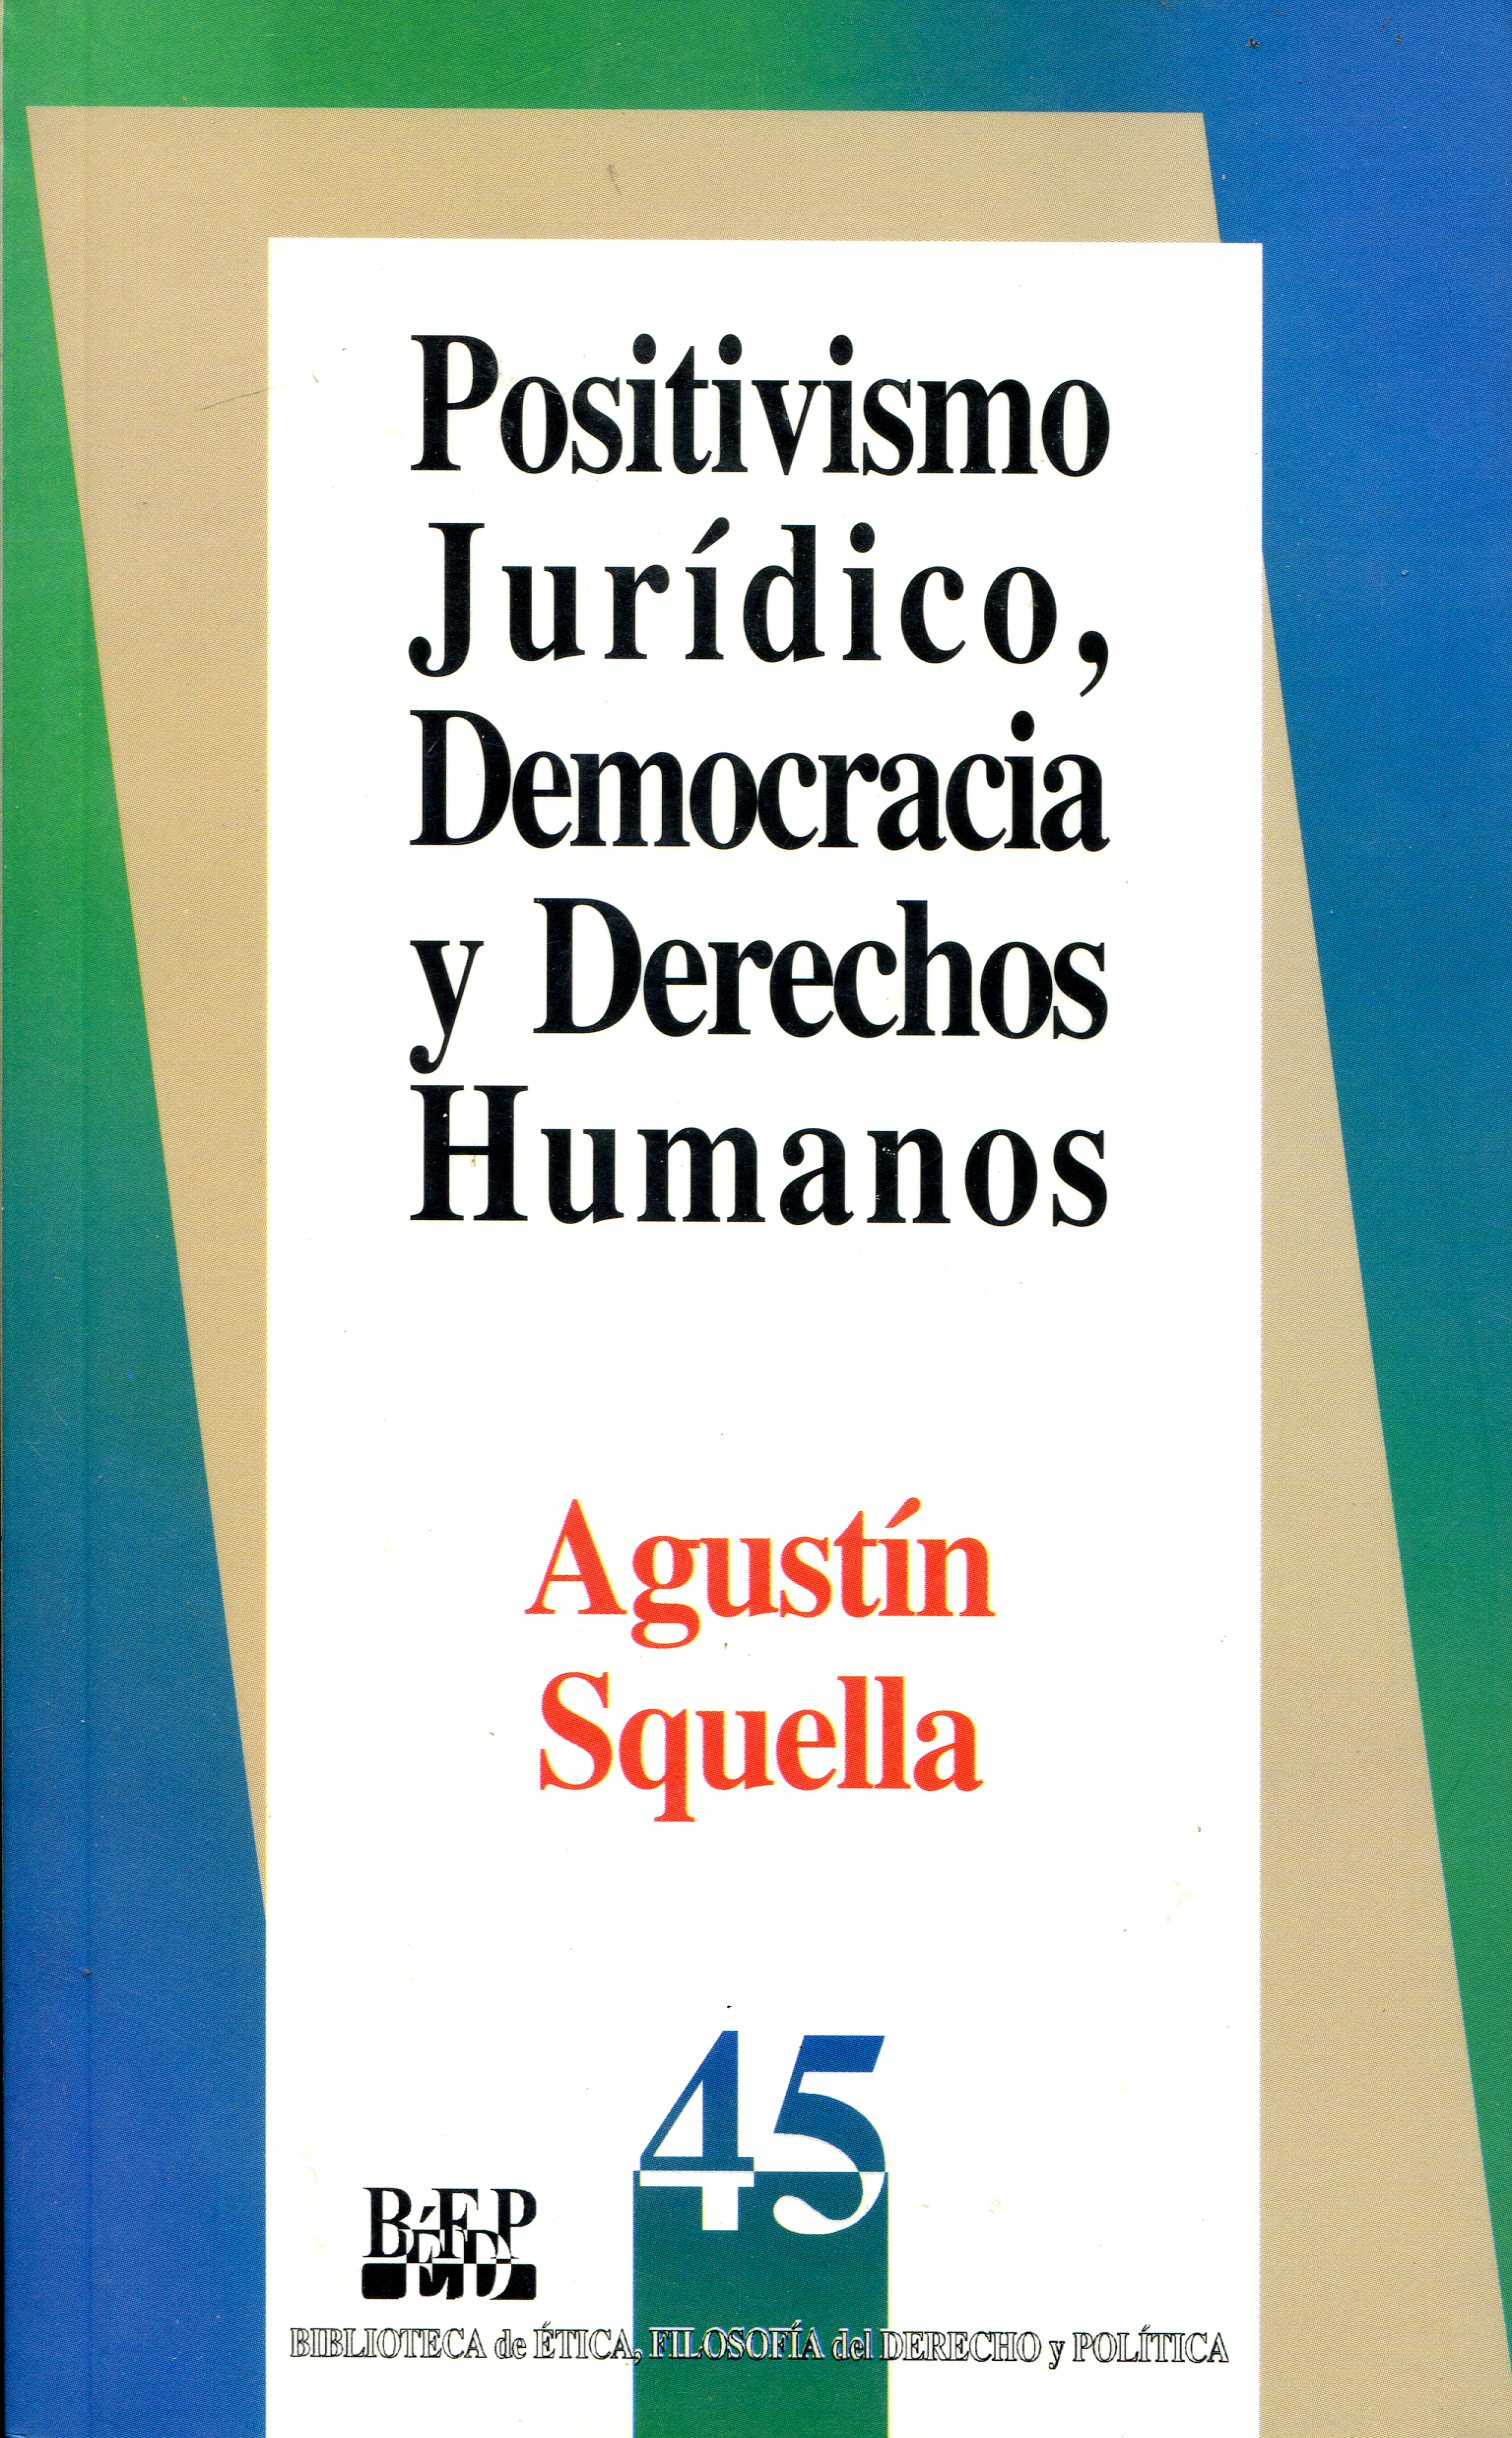 Positivismo juridico, democracia y derechos humanos